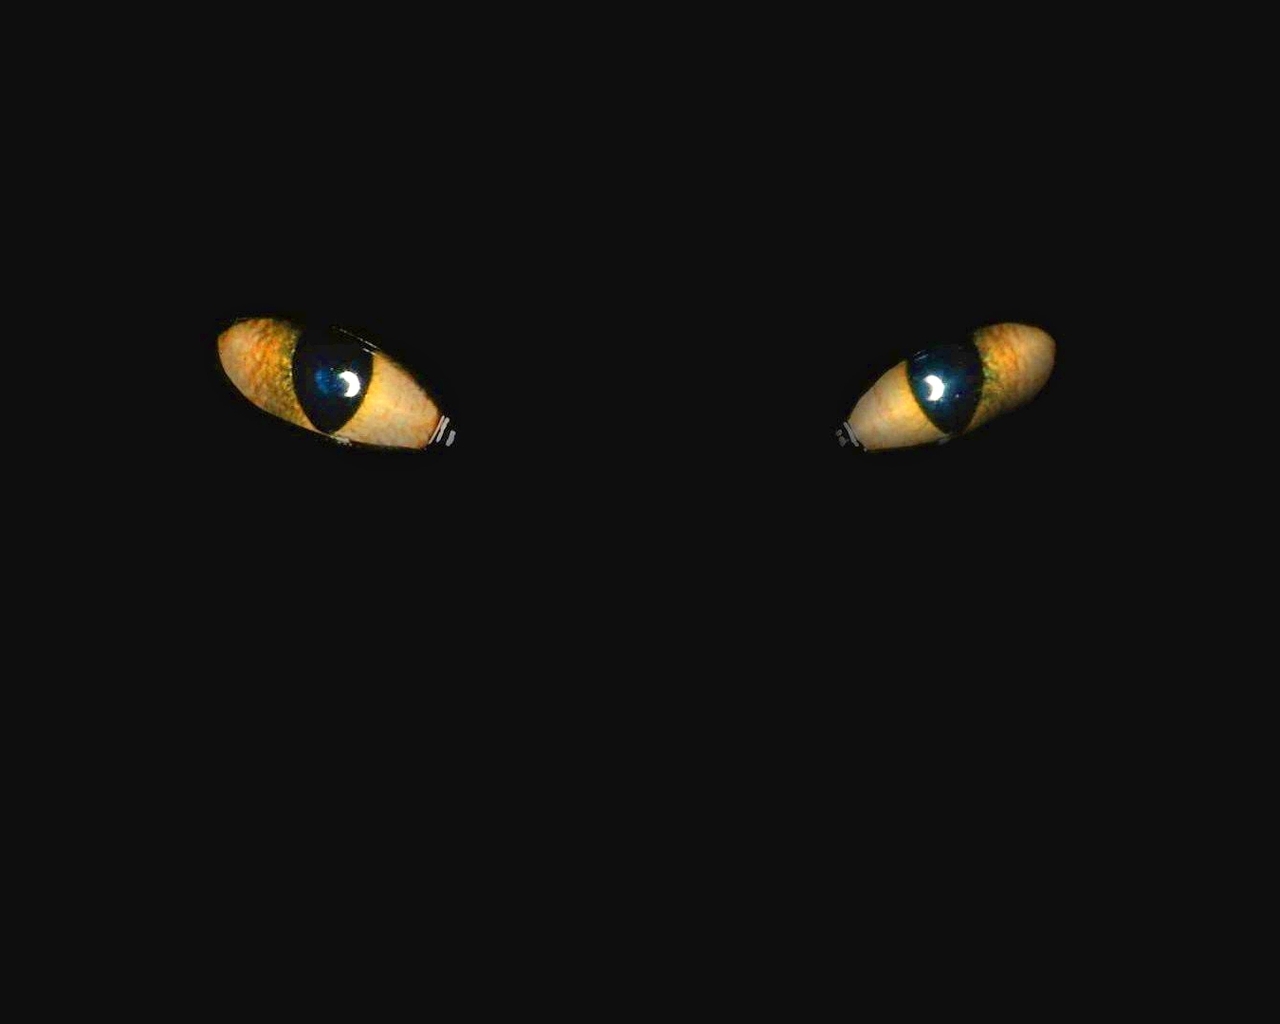 Image: Cat, eyes, black background